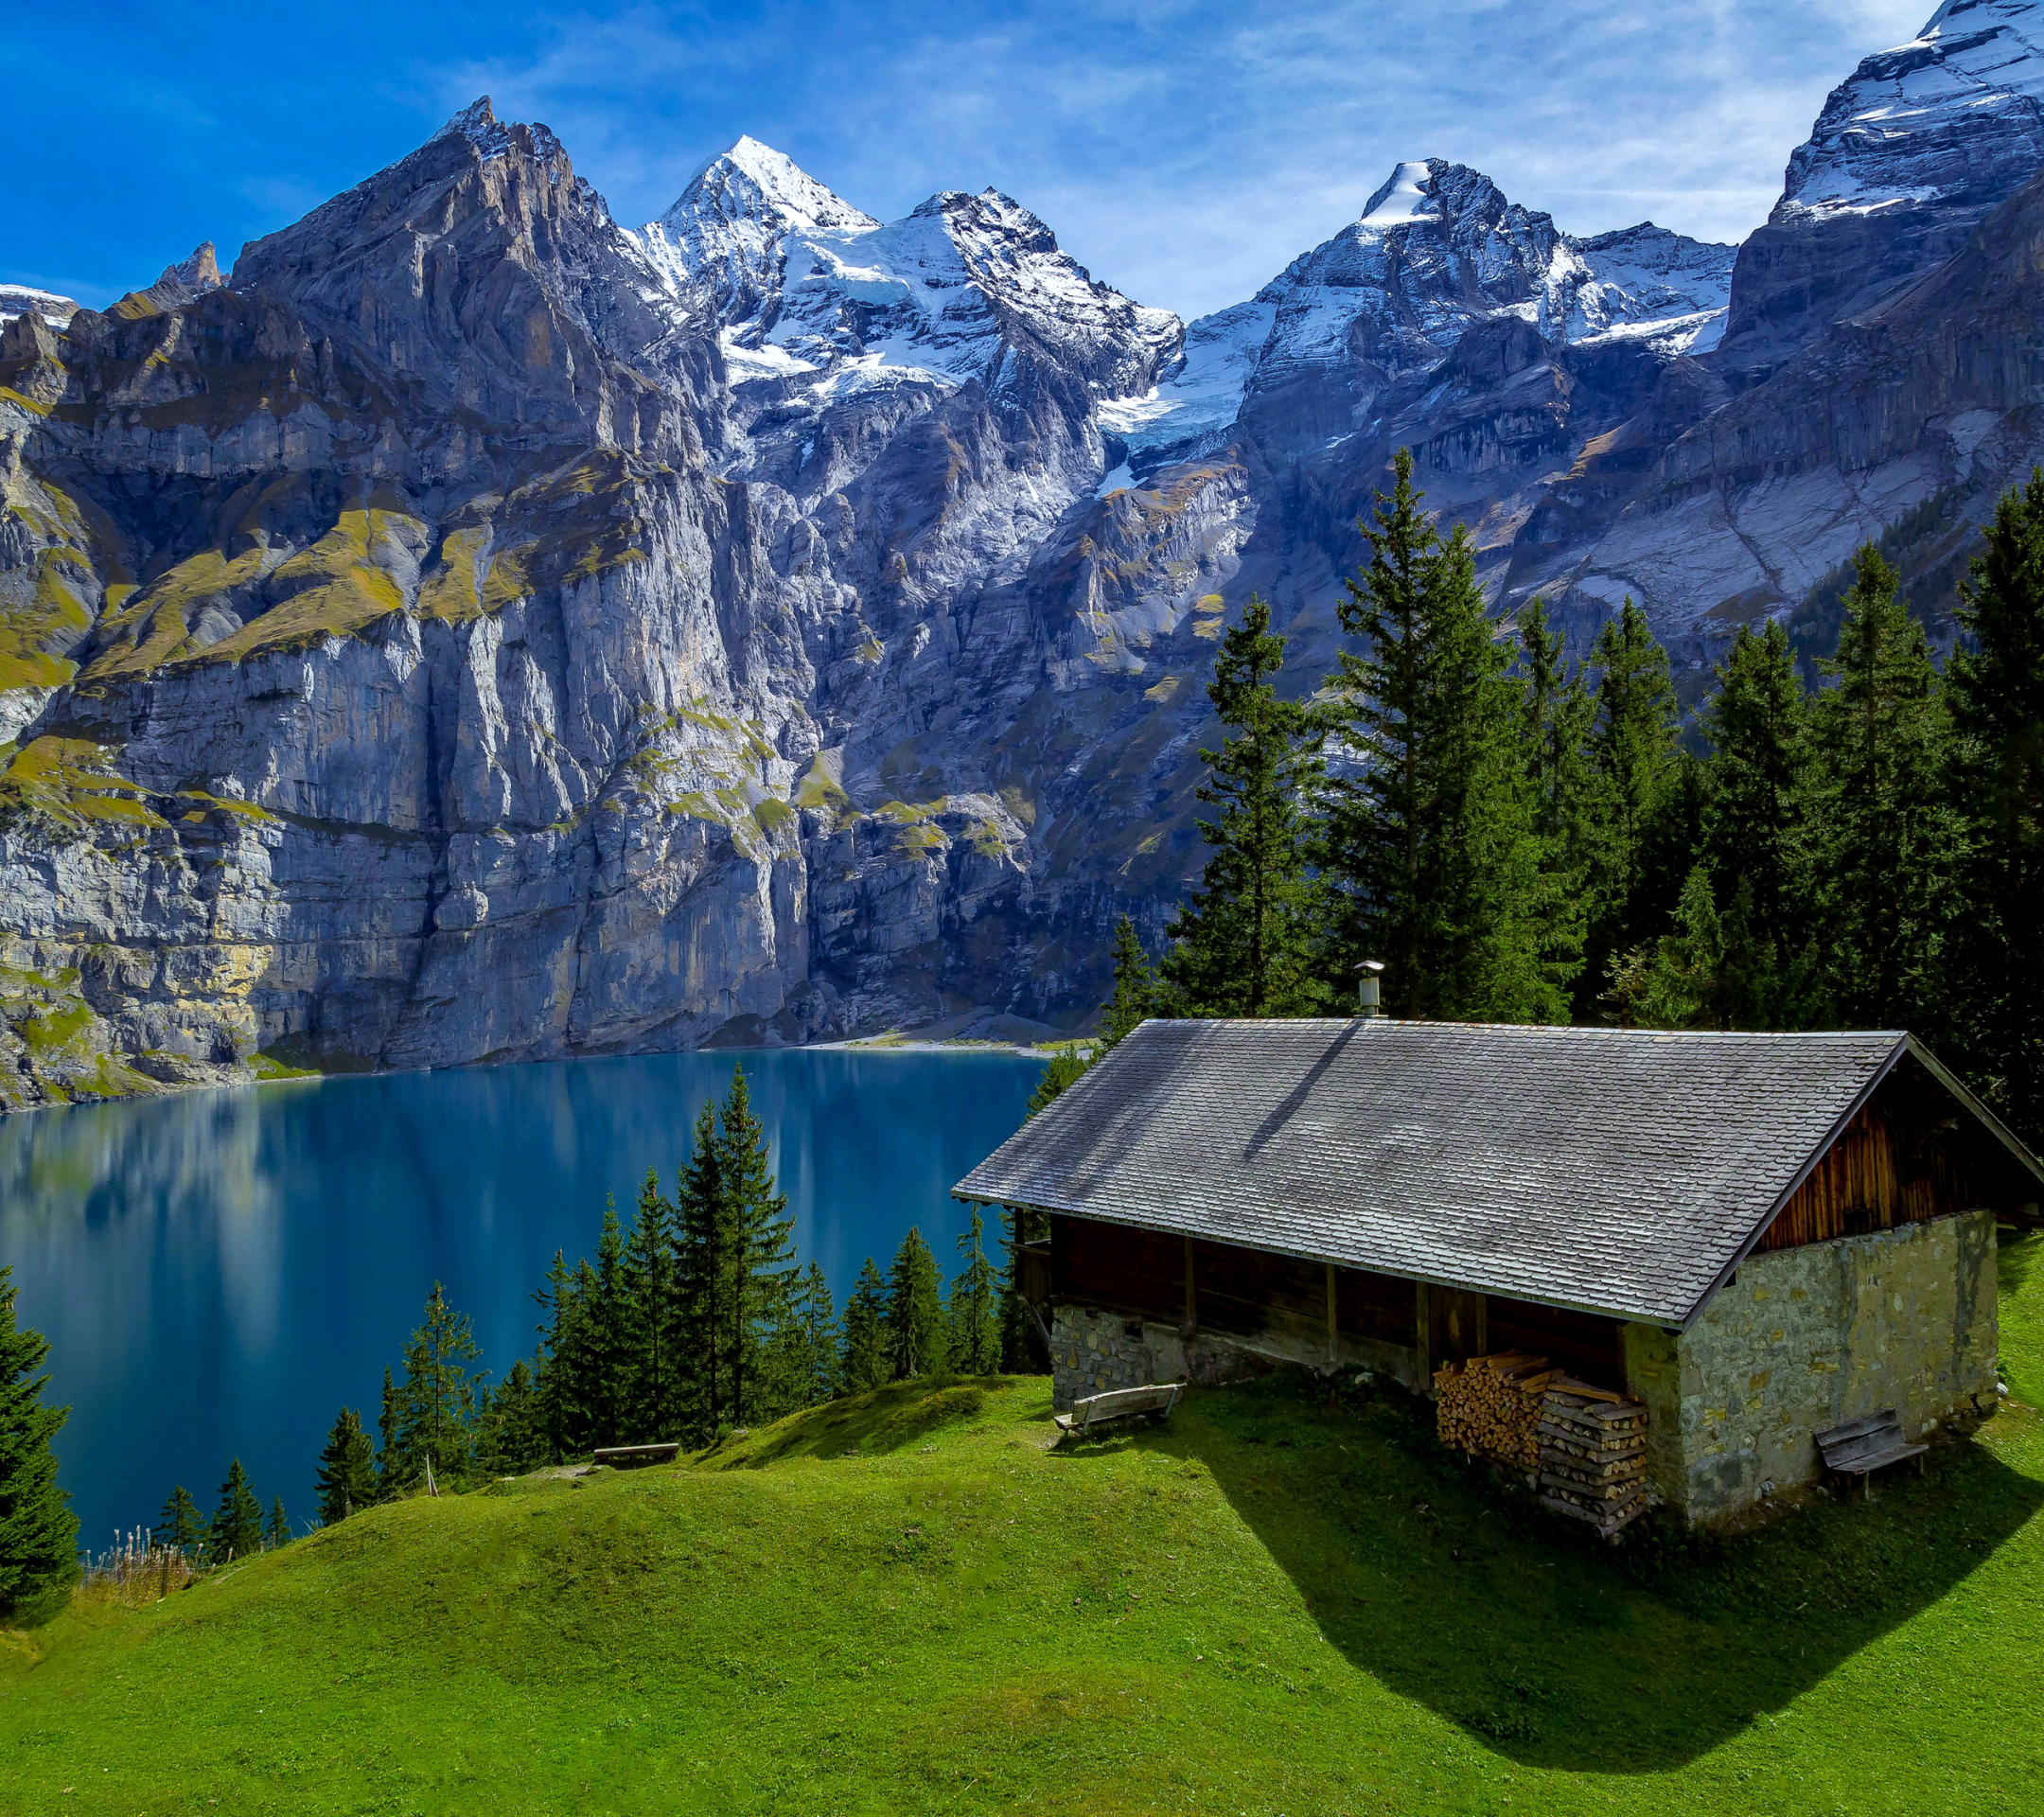 Free download wallpaper Mountain, Lake, House, Switzerland, Man Made on your PC desktop